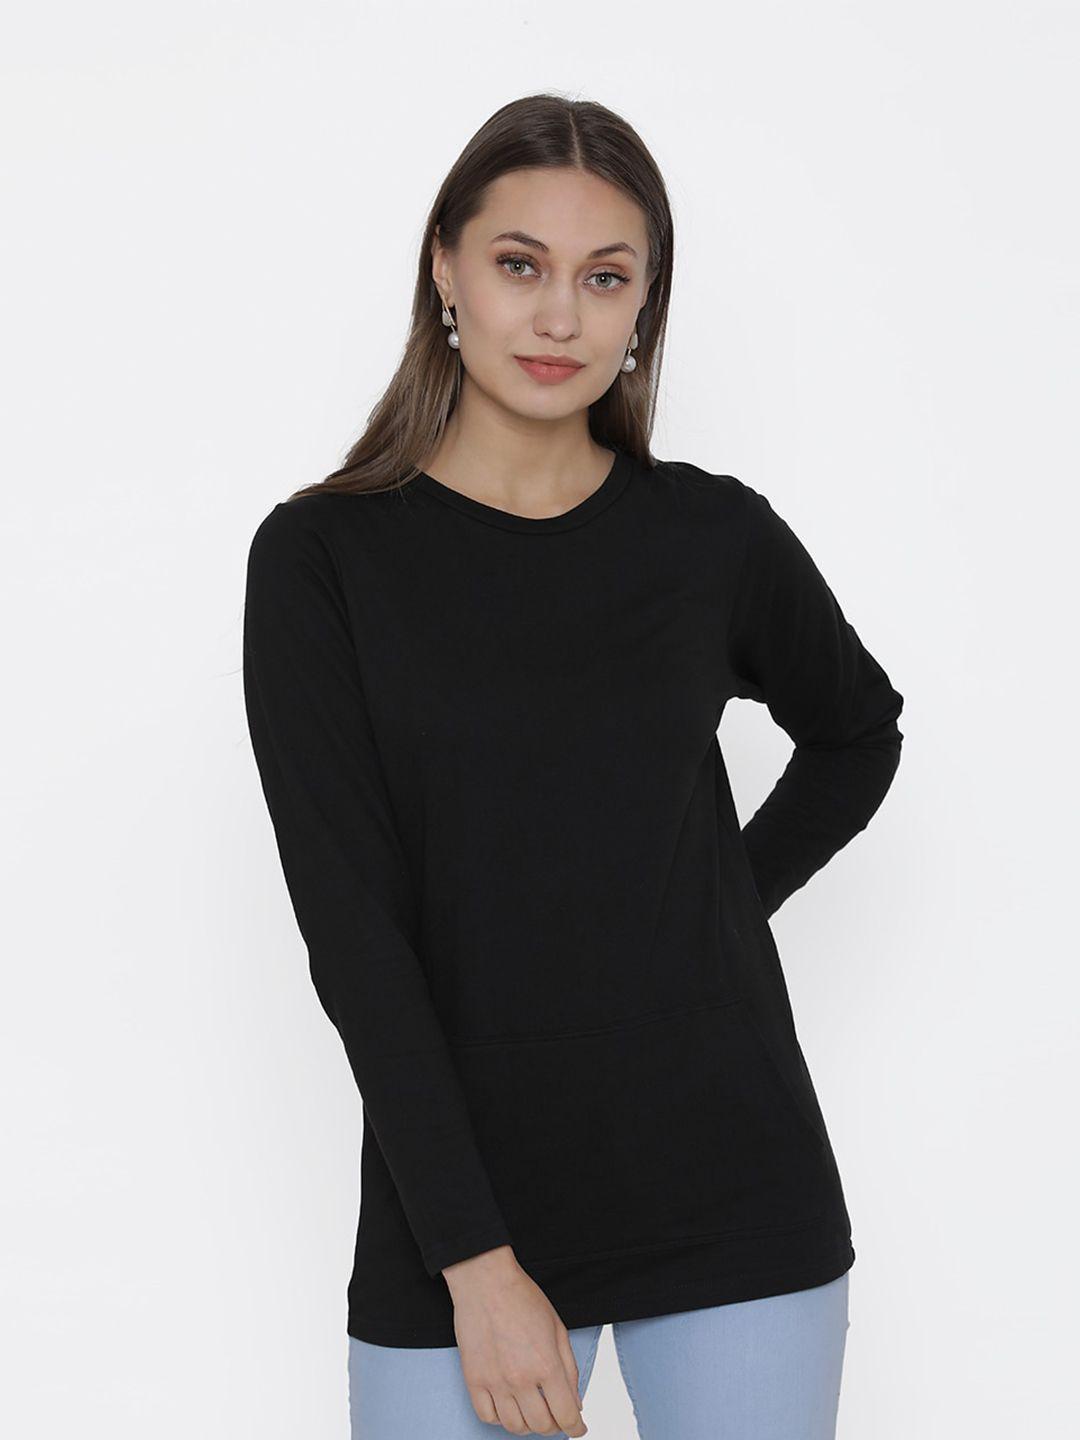 door74-women-black-long-sleeves-cotton-t-shirt